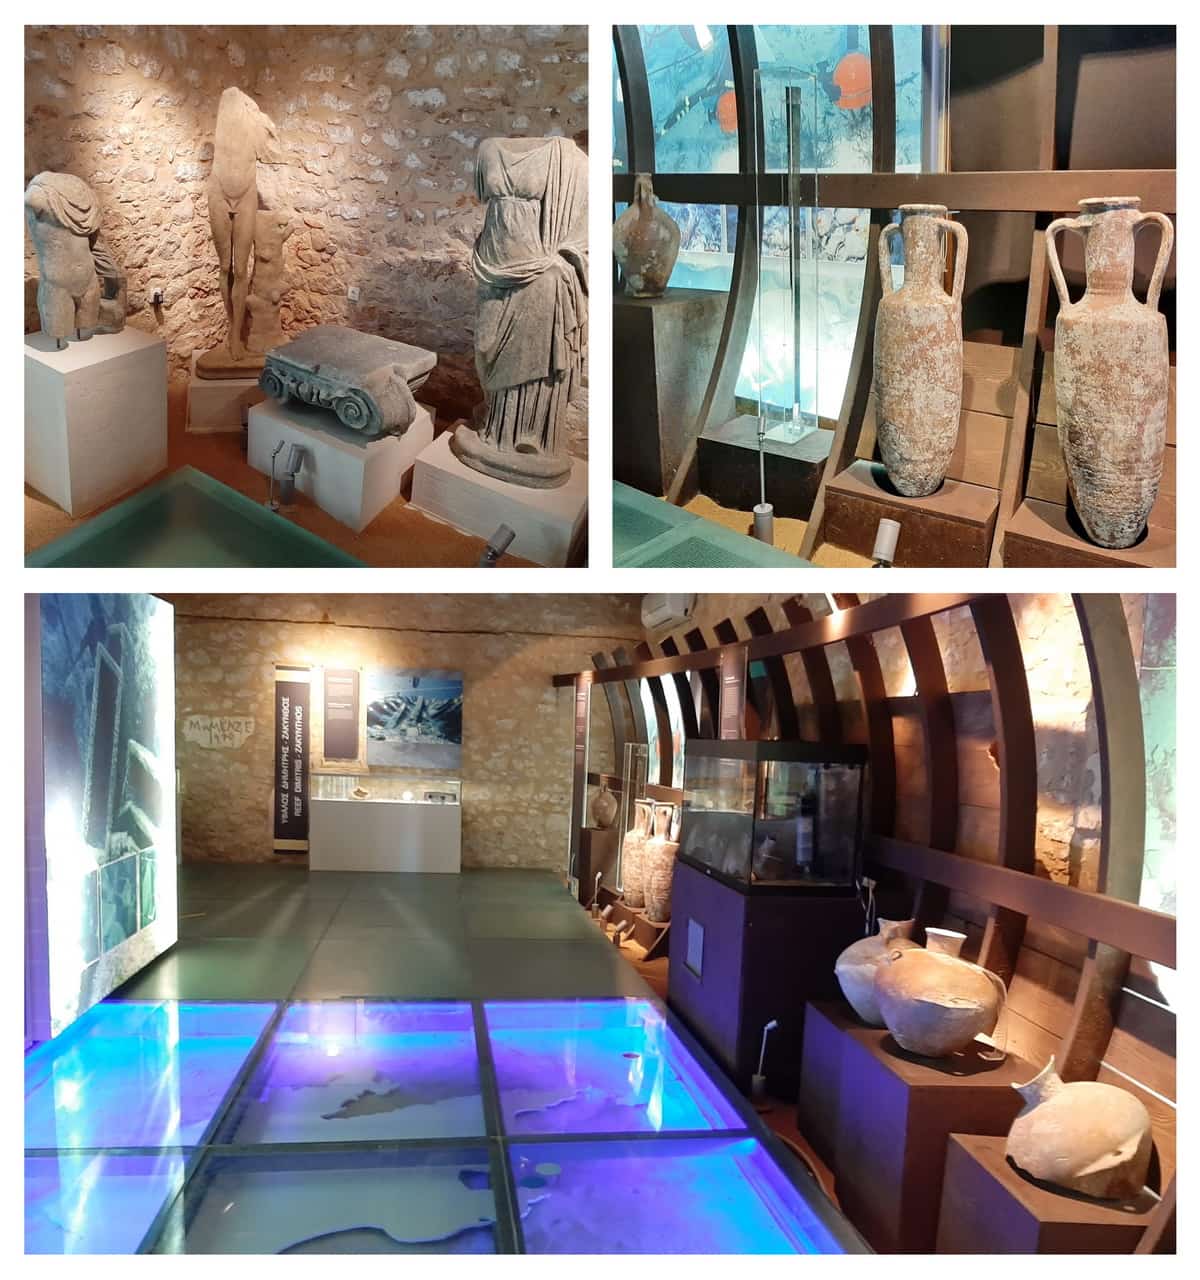 Exhibition of the underwater antiquities, Neokastro, Pylos